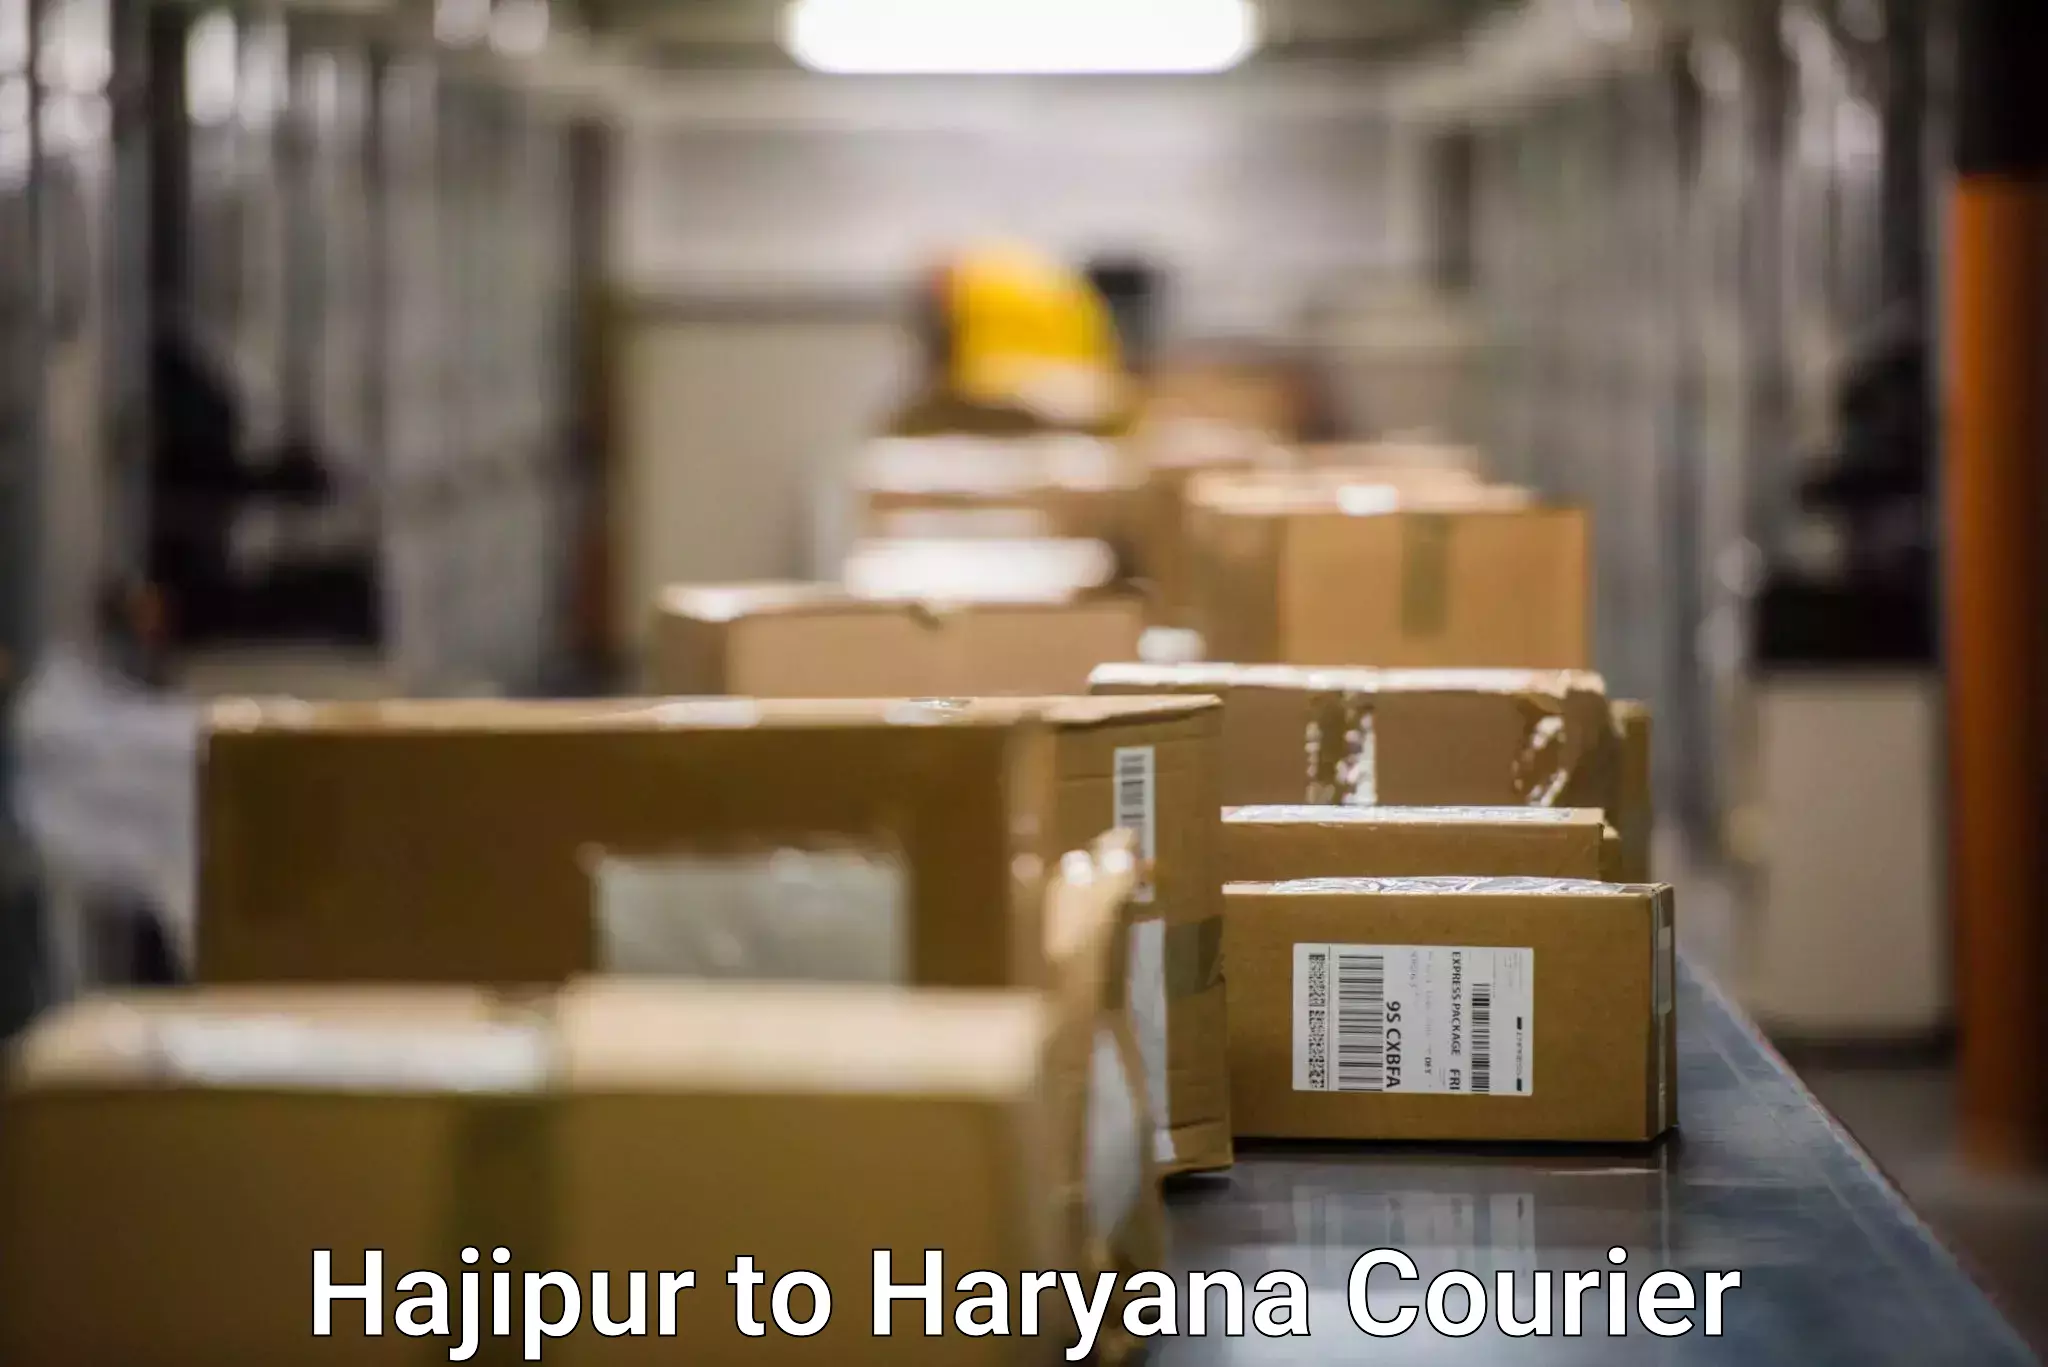 Individual parcel service Hajipur to Dharuhera